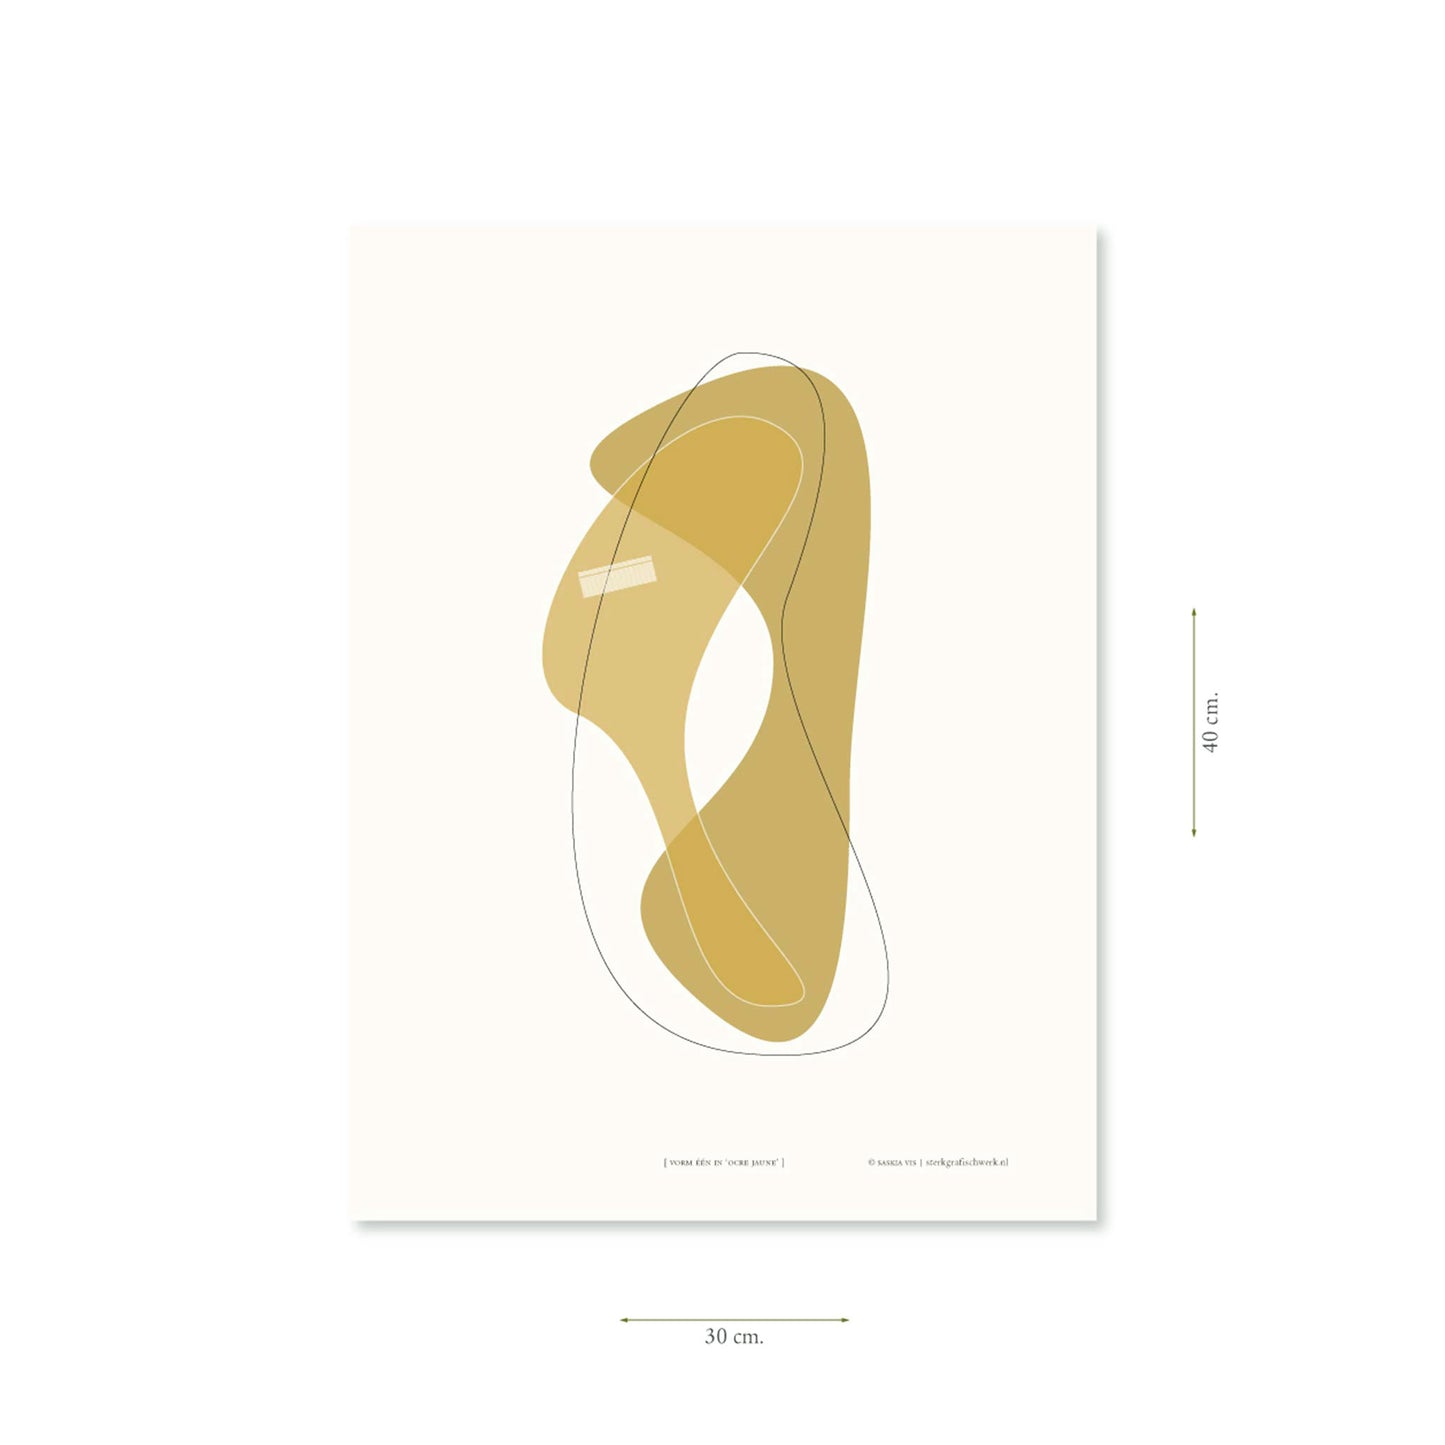 Productafbeelding, poster "vorm één in ocre jaune", met aanduiding van het formaat erop weergegeven 30 x 40 cm